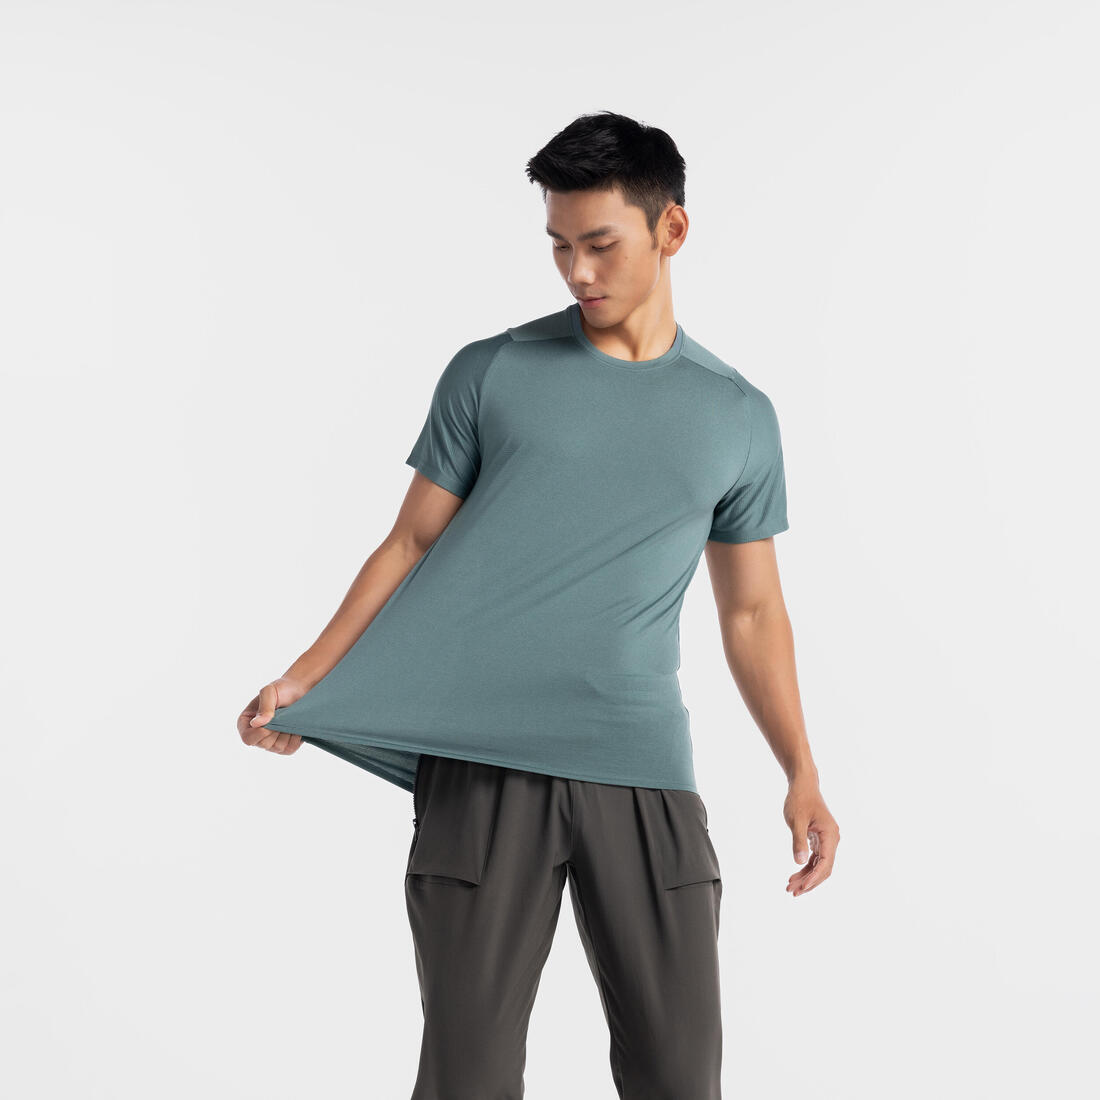 DOMYOS (ドミオス) フィットネス メンズ Tシャツ 透湿性 レギュラーフィット クルーネック 防臭 500